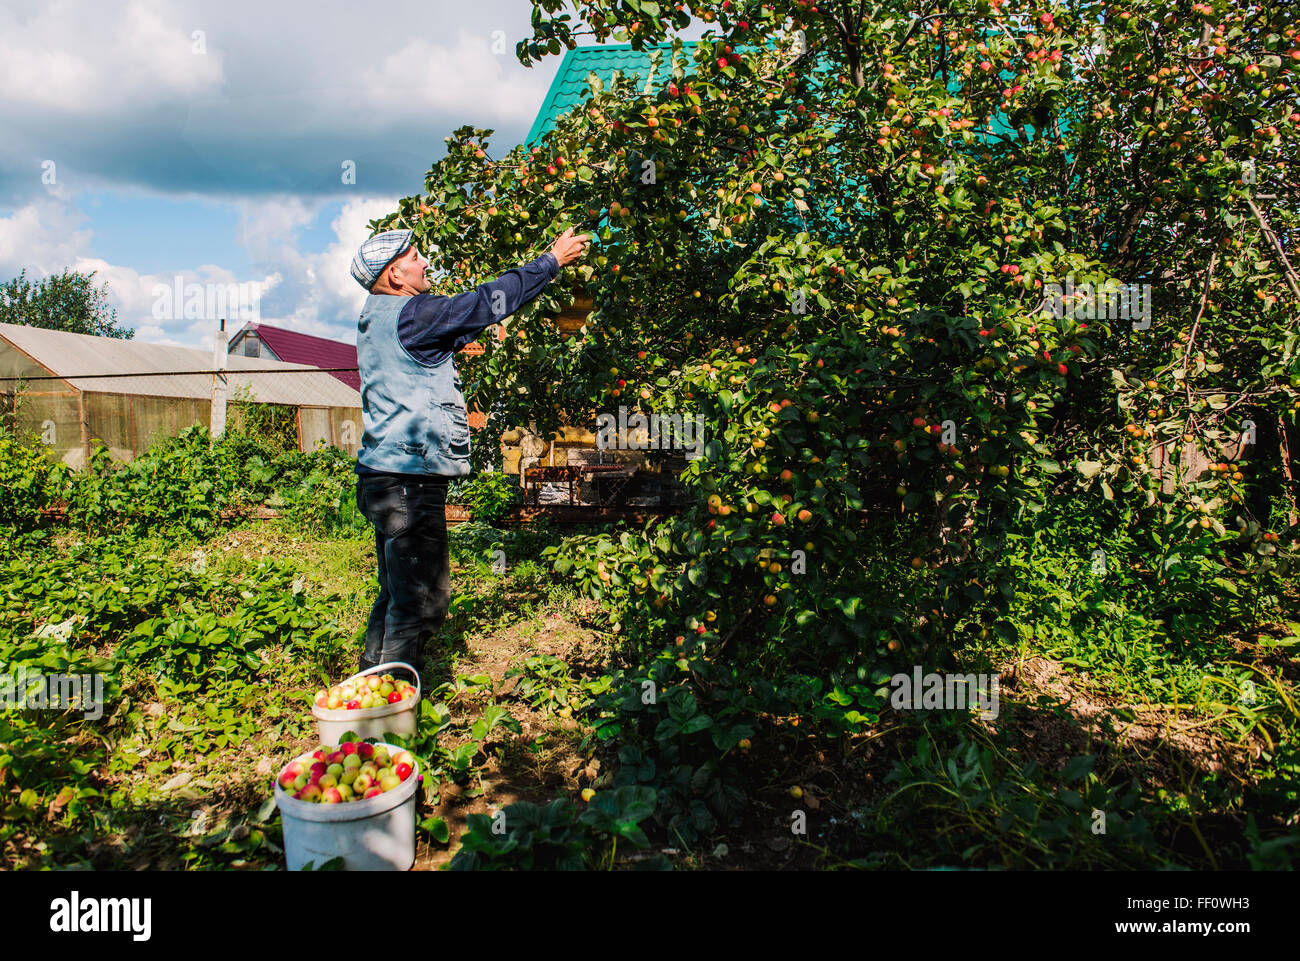 Caucasian farmer picking fruit in garden Stock Photo